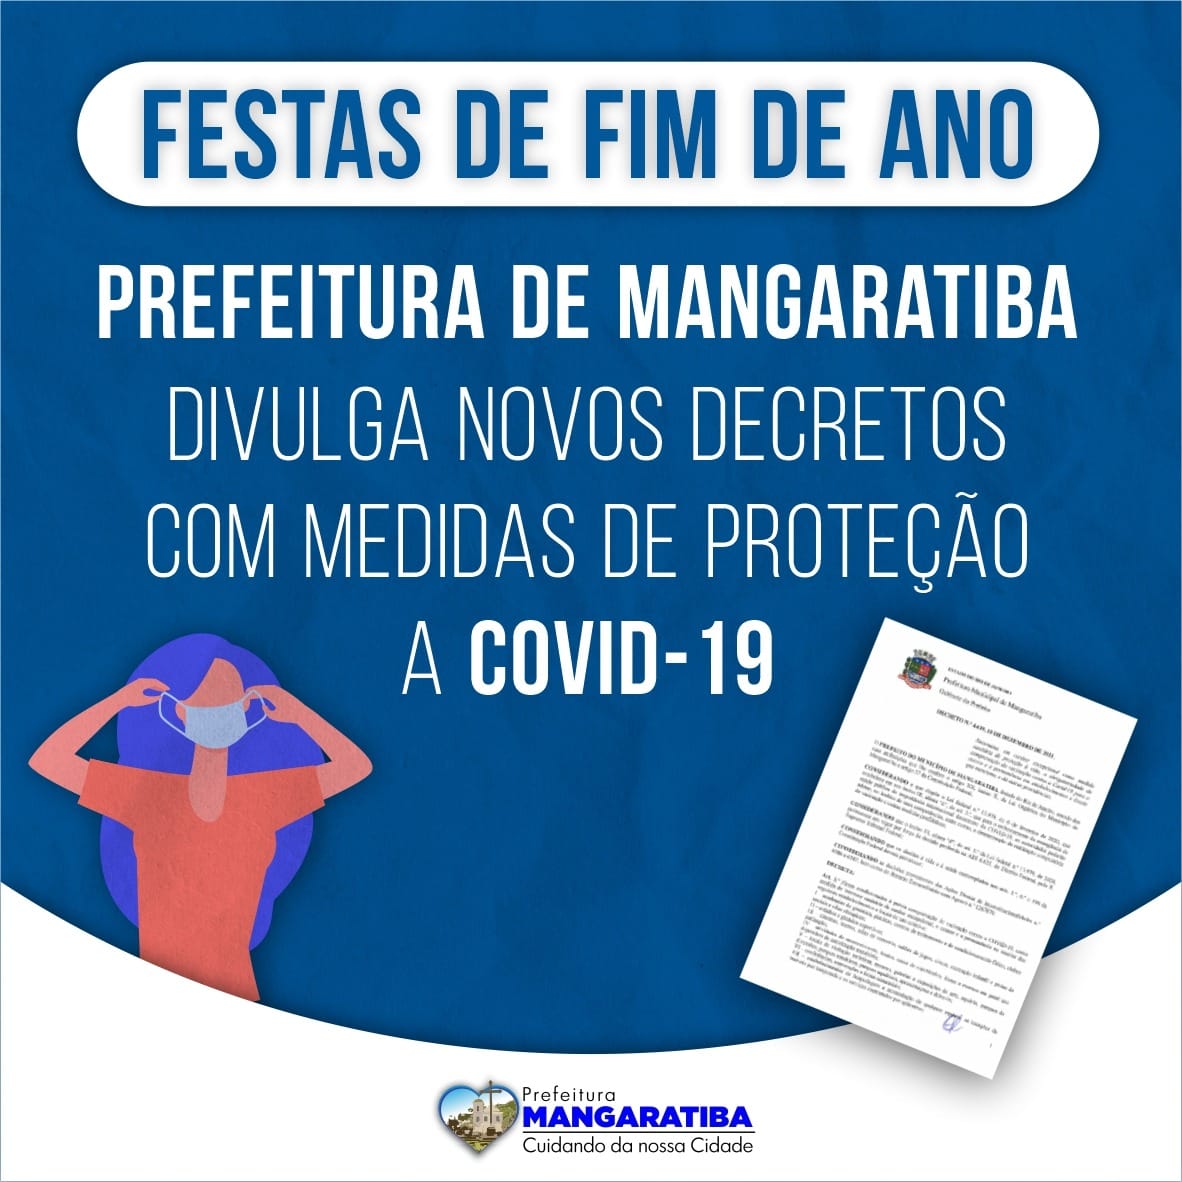 Prefeitura de Mangaratiba determina novas regras para controle da pandemia no município